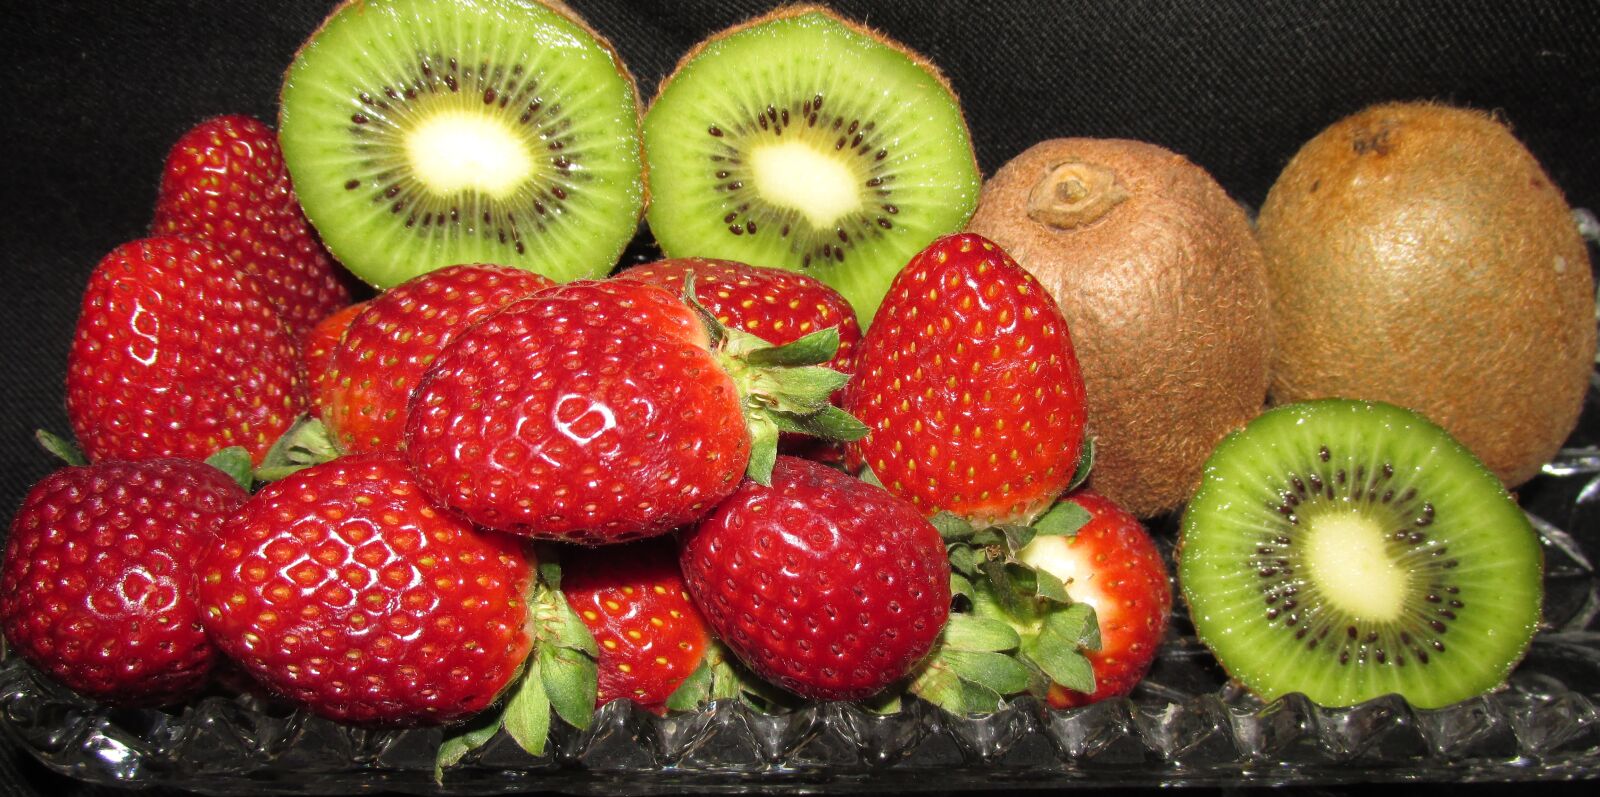 Canon PowerShot SX170 IS sample photo. Fruit, strawberries, kiwi fruit photography